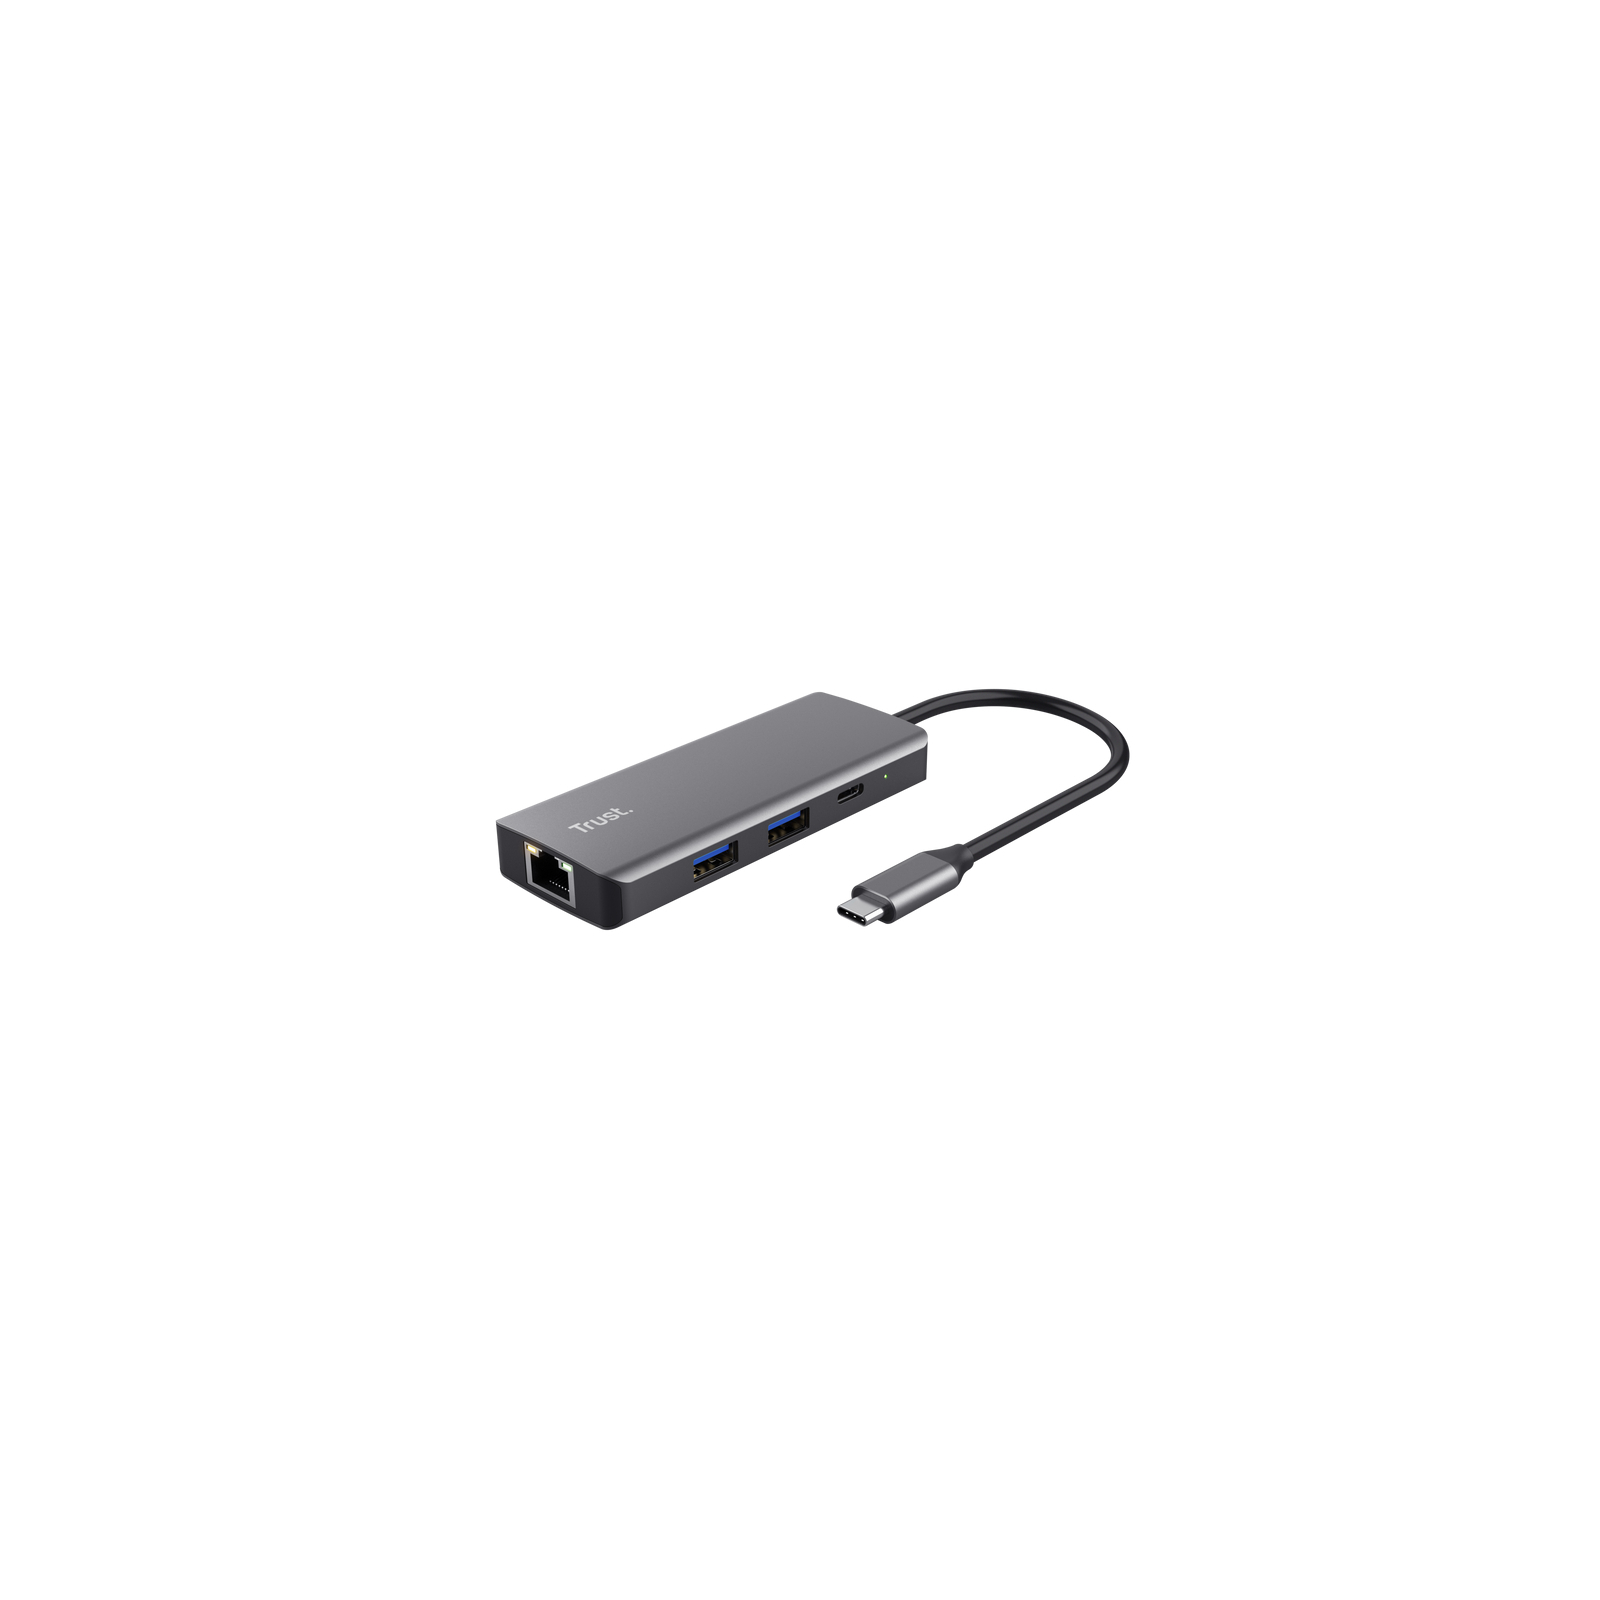 Порт-репликатор Trust Dalyx 6-in-1 USB-C Multi-port Dock Aluminium (24968_TRUST)